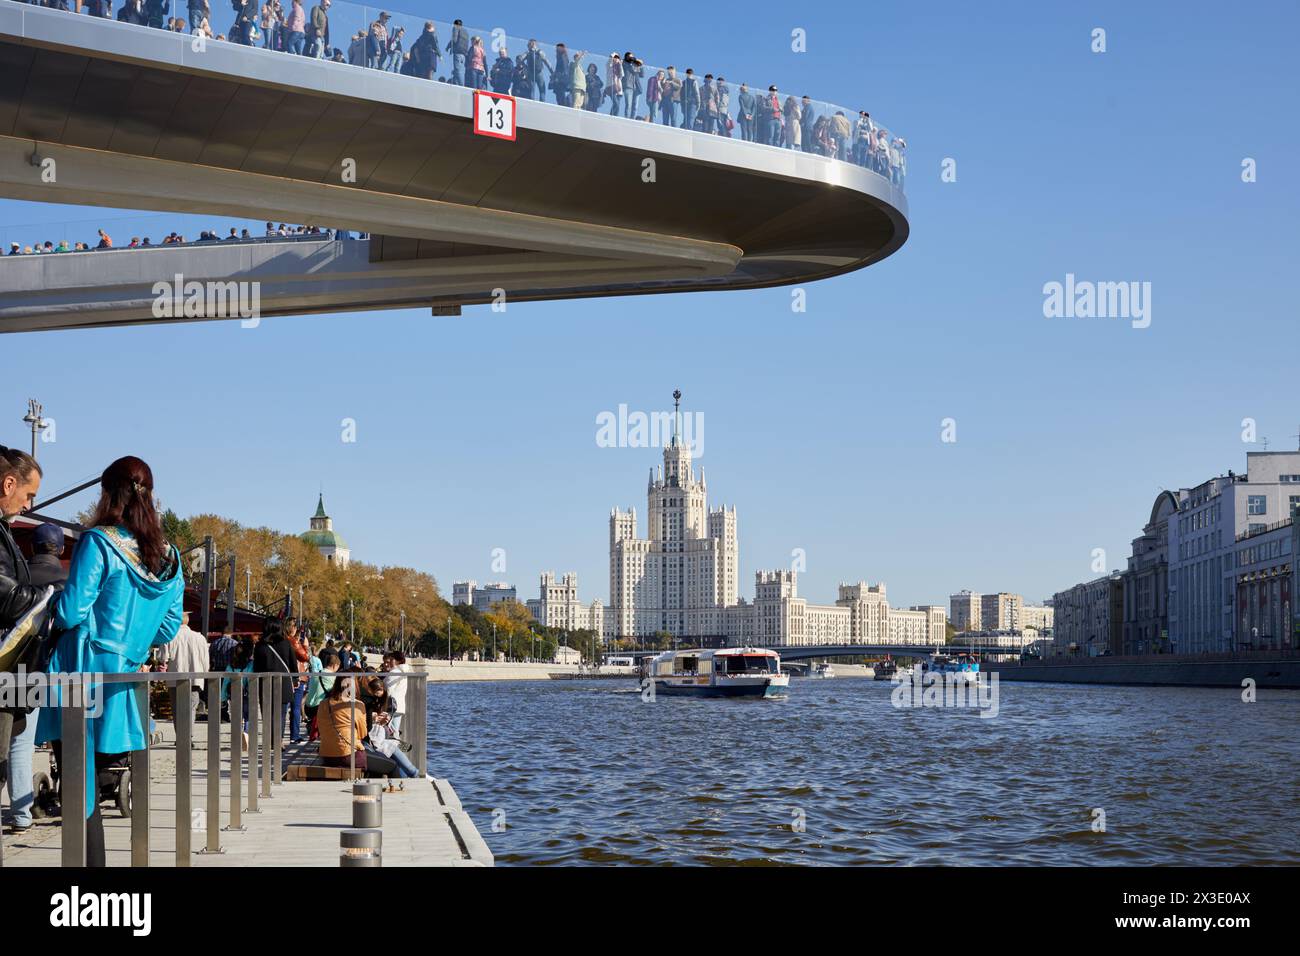 MOSCA, RUSSIA - 24 settembre 2017: Persone presso l'argine Moskvoretskaya, ponte galleggiante sopra il fiume Moskva, torre Kotelnicheskaya. Il ponte si trova a 70 metri di distanza Foto Stock